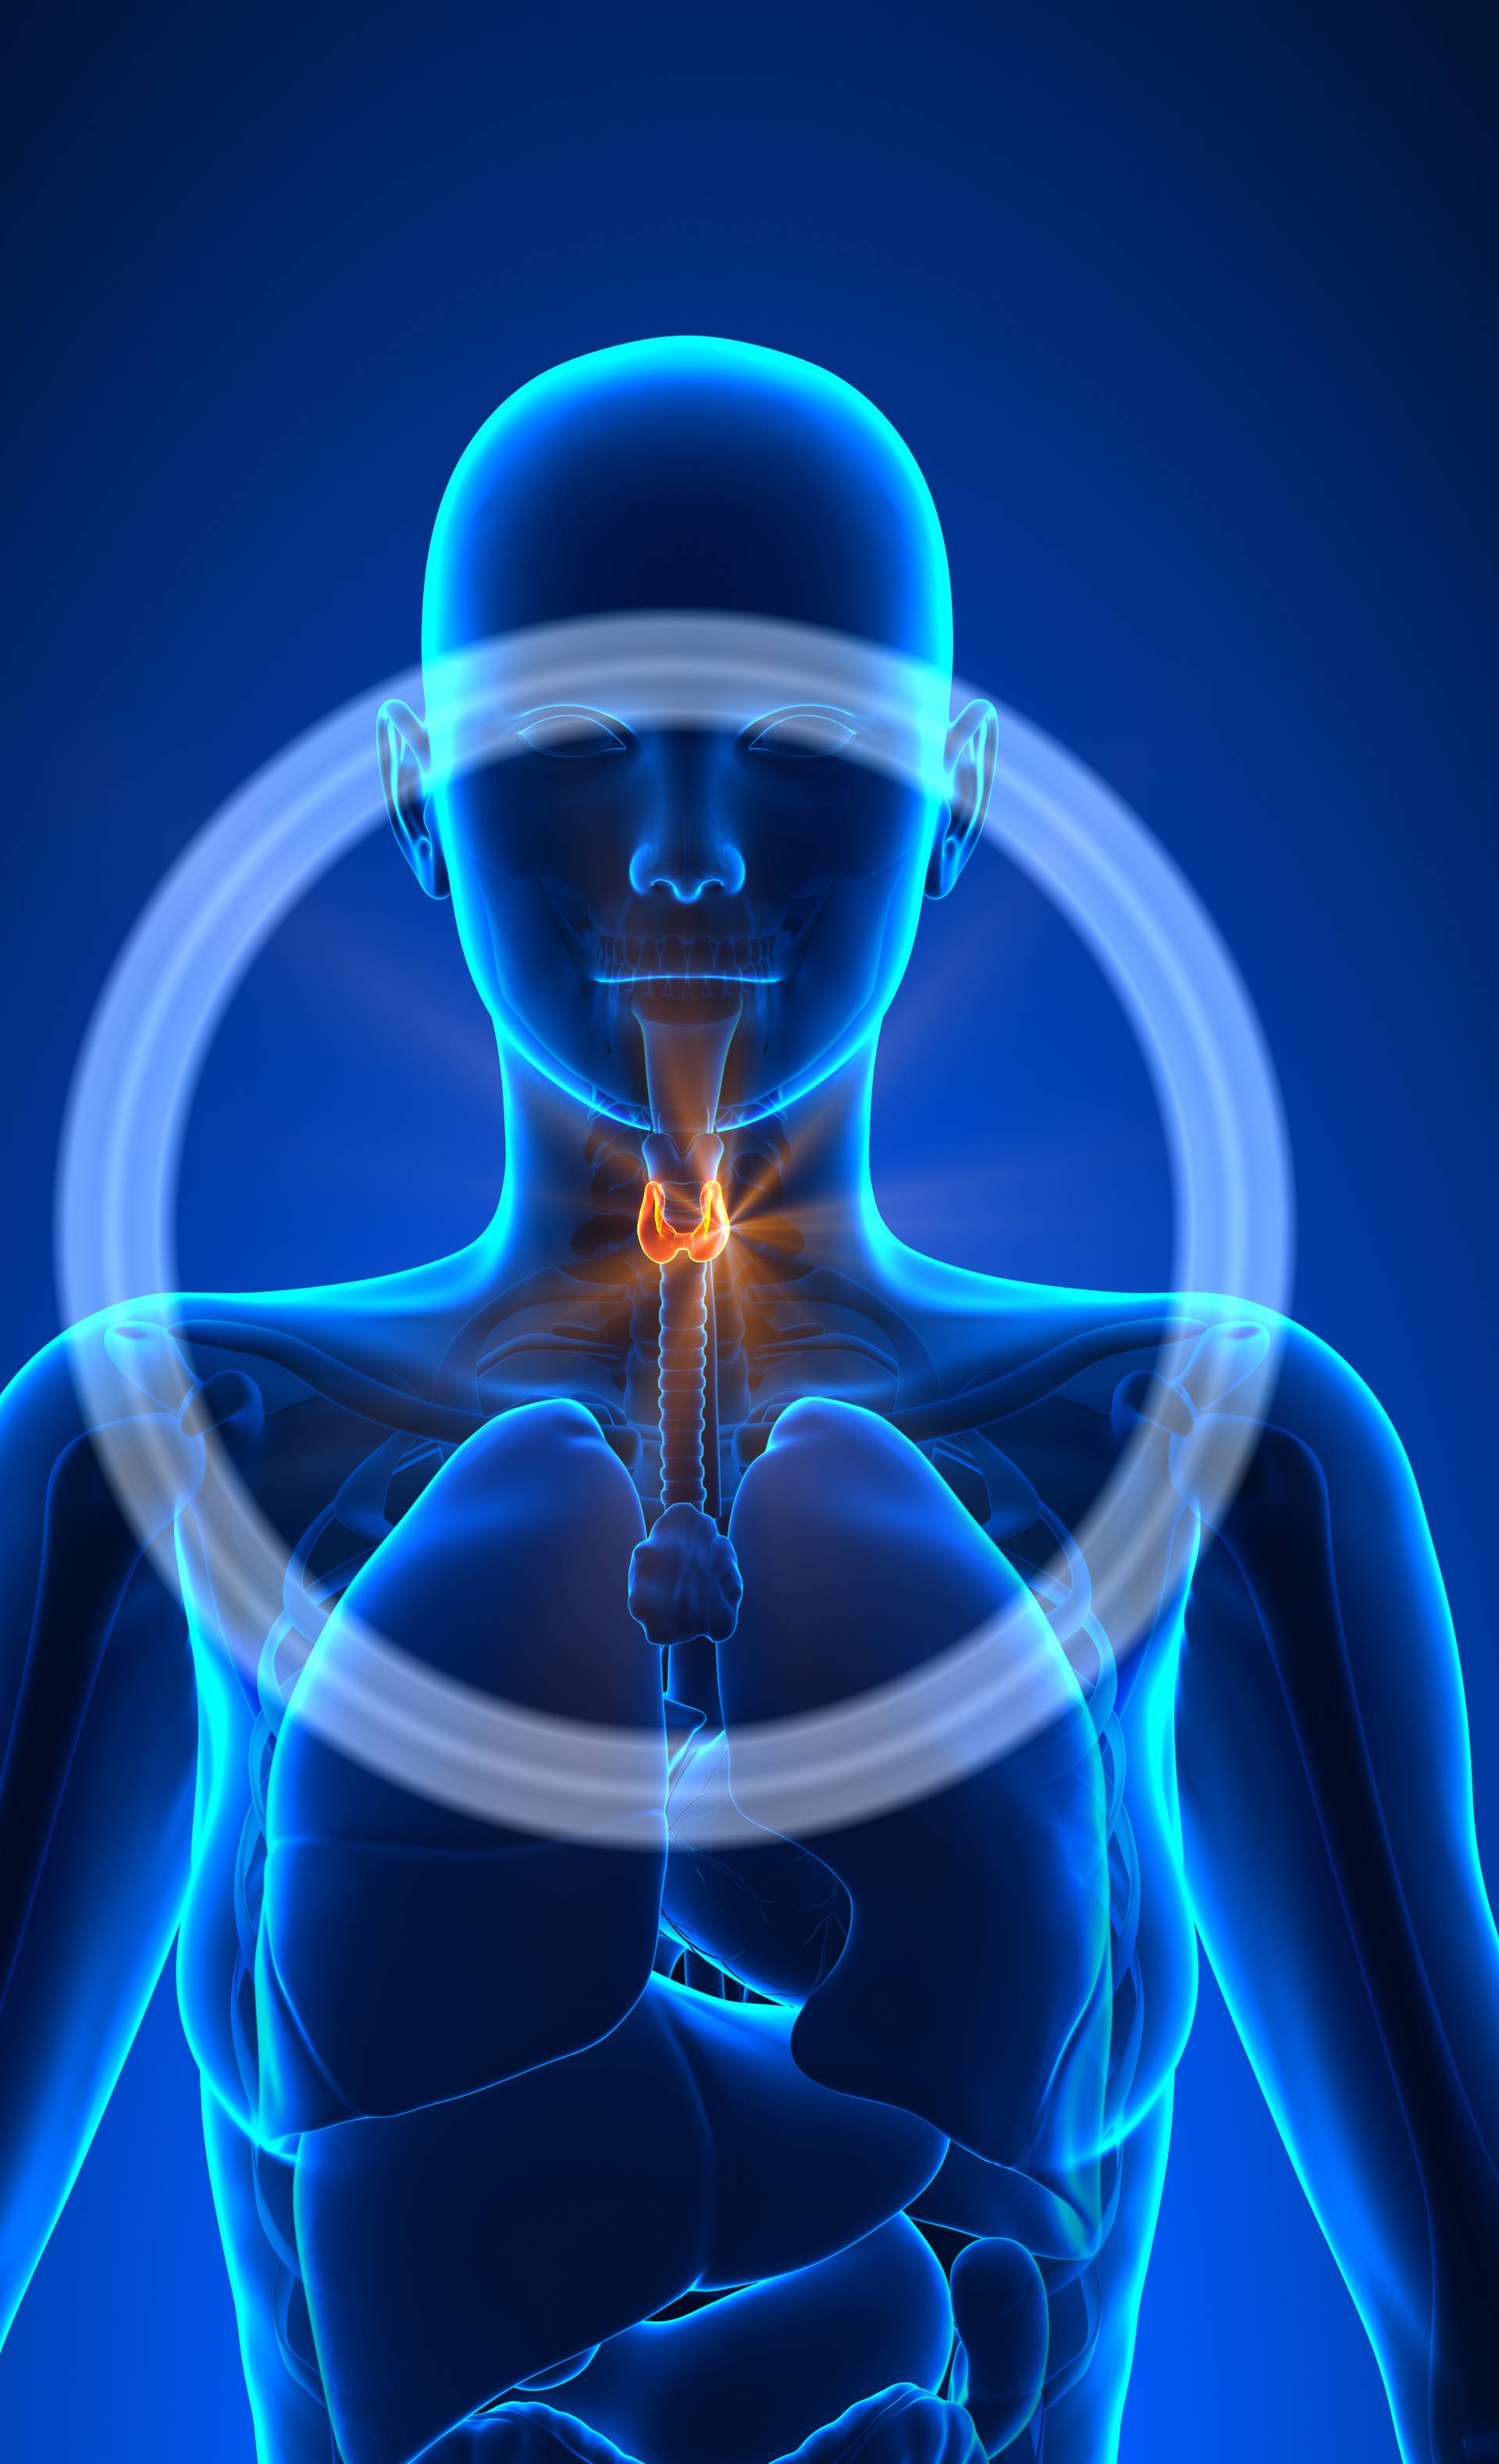 Thyroid - Female Organs - Human Anatomy